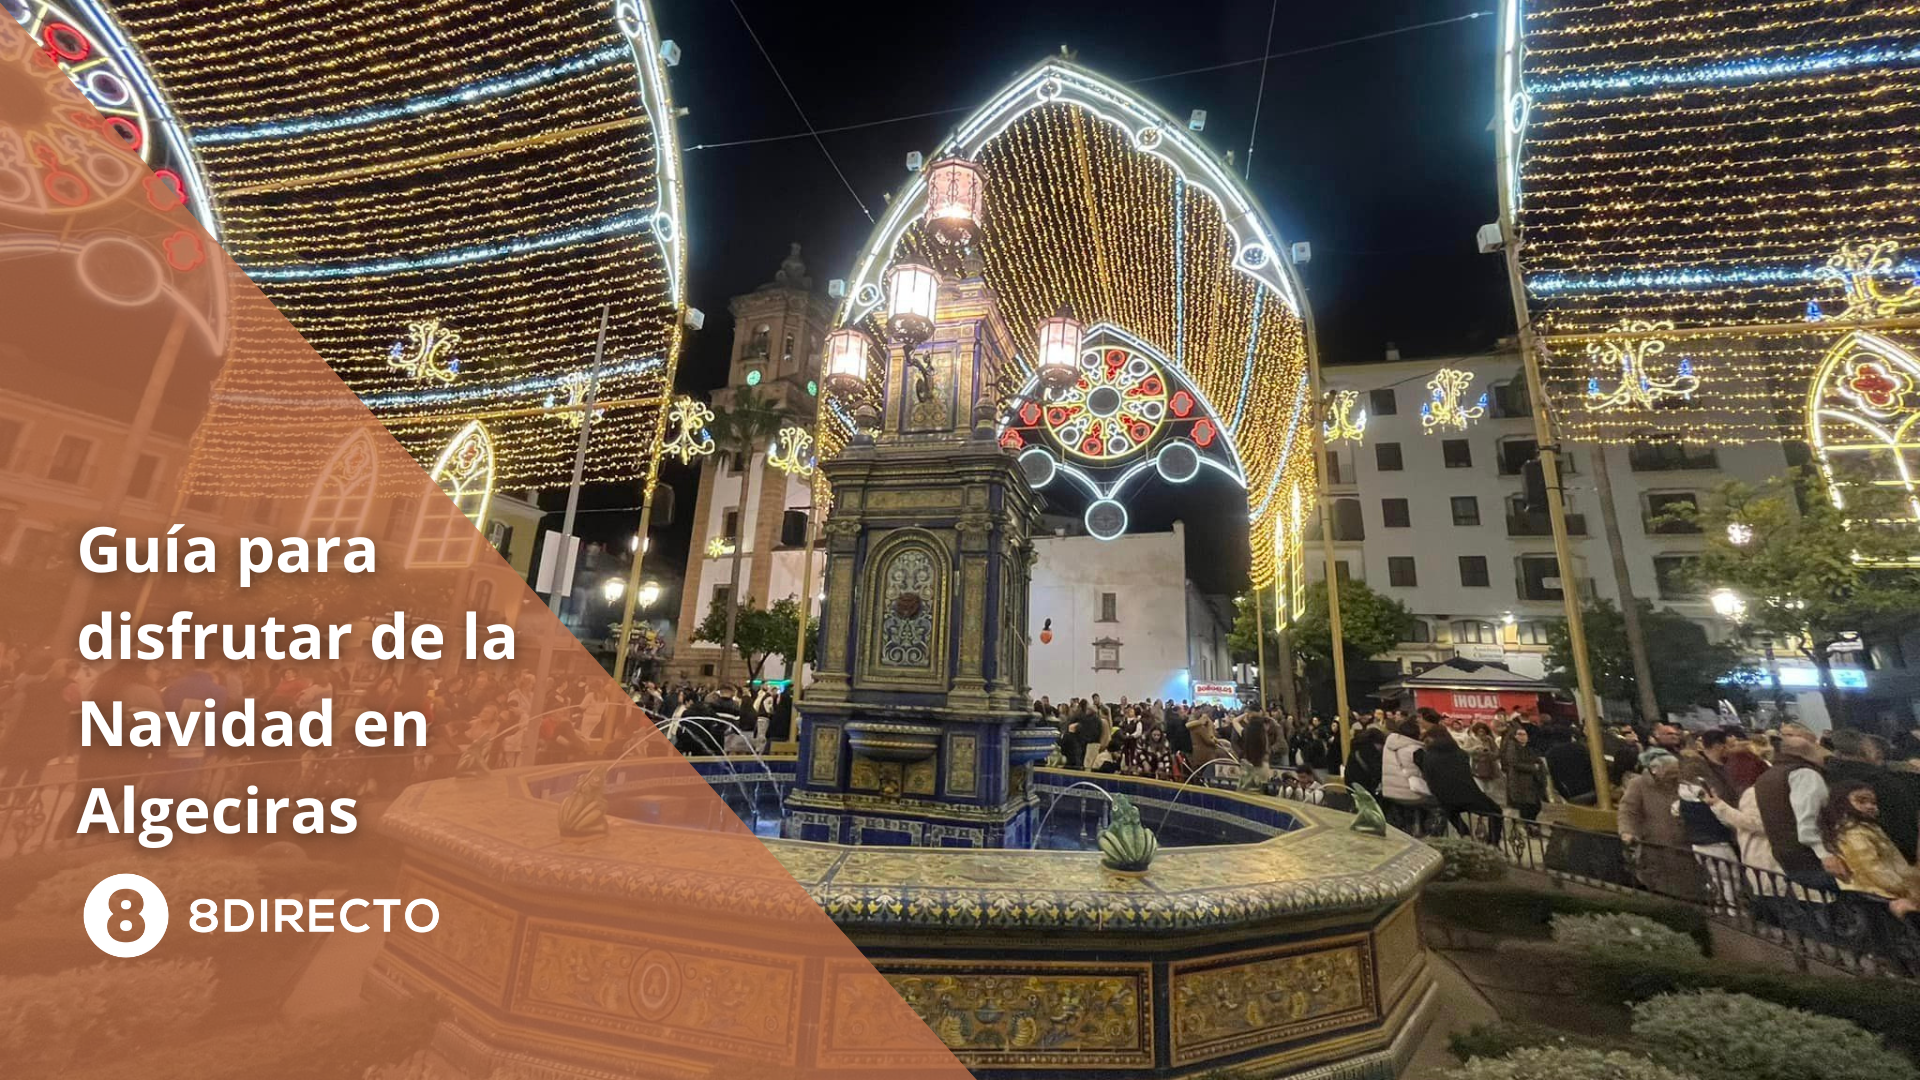 Belén viviente, pasacalles y fiestas infantiles: guía para disfrutar de la Navidad en Algeciras